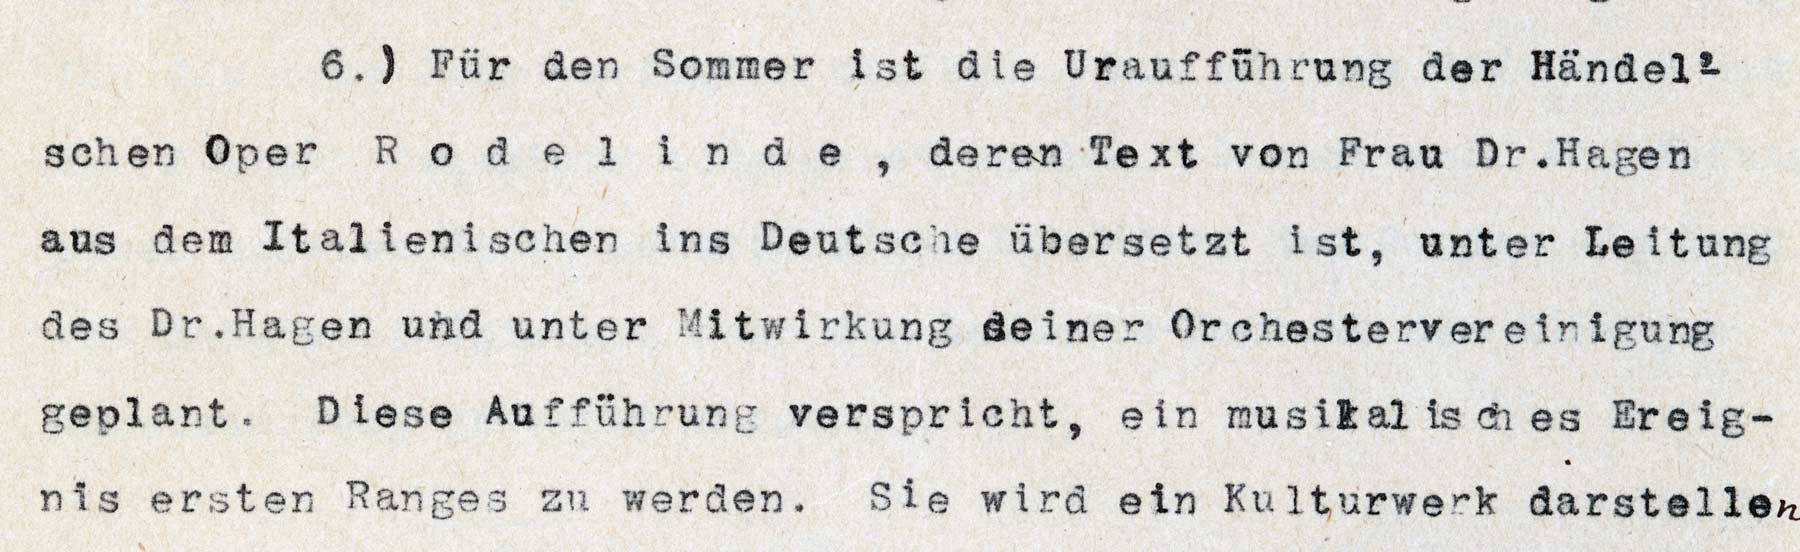 Auszug aus dem Protokoll der Sitzung des Verwaltungsrates des Universitätsbund Göttingen, 17. Februar 1920